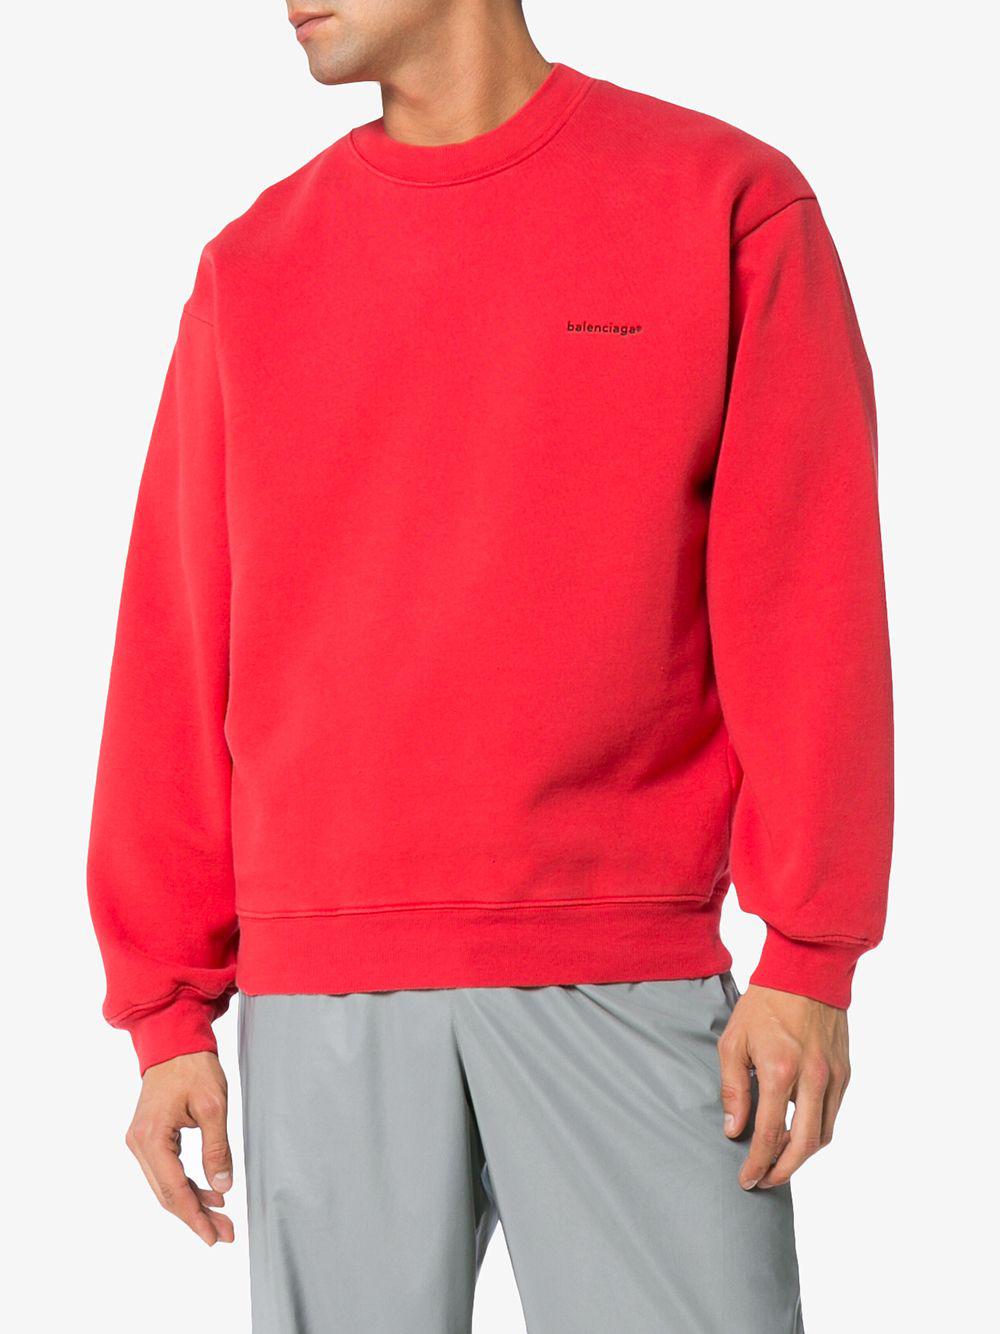 balenciaga red sweatshirt